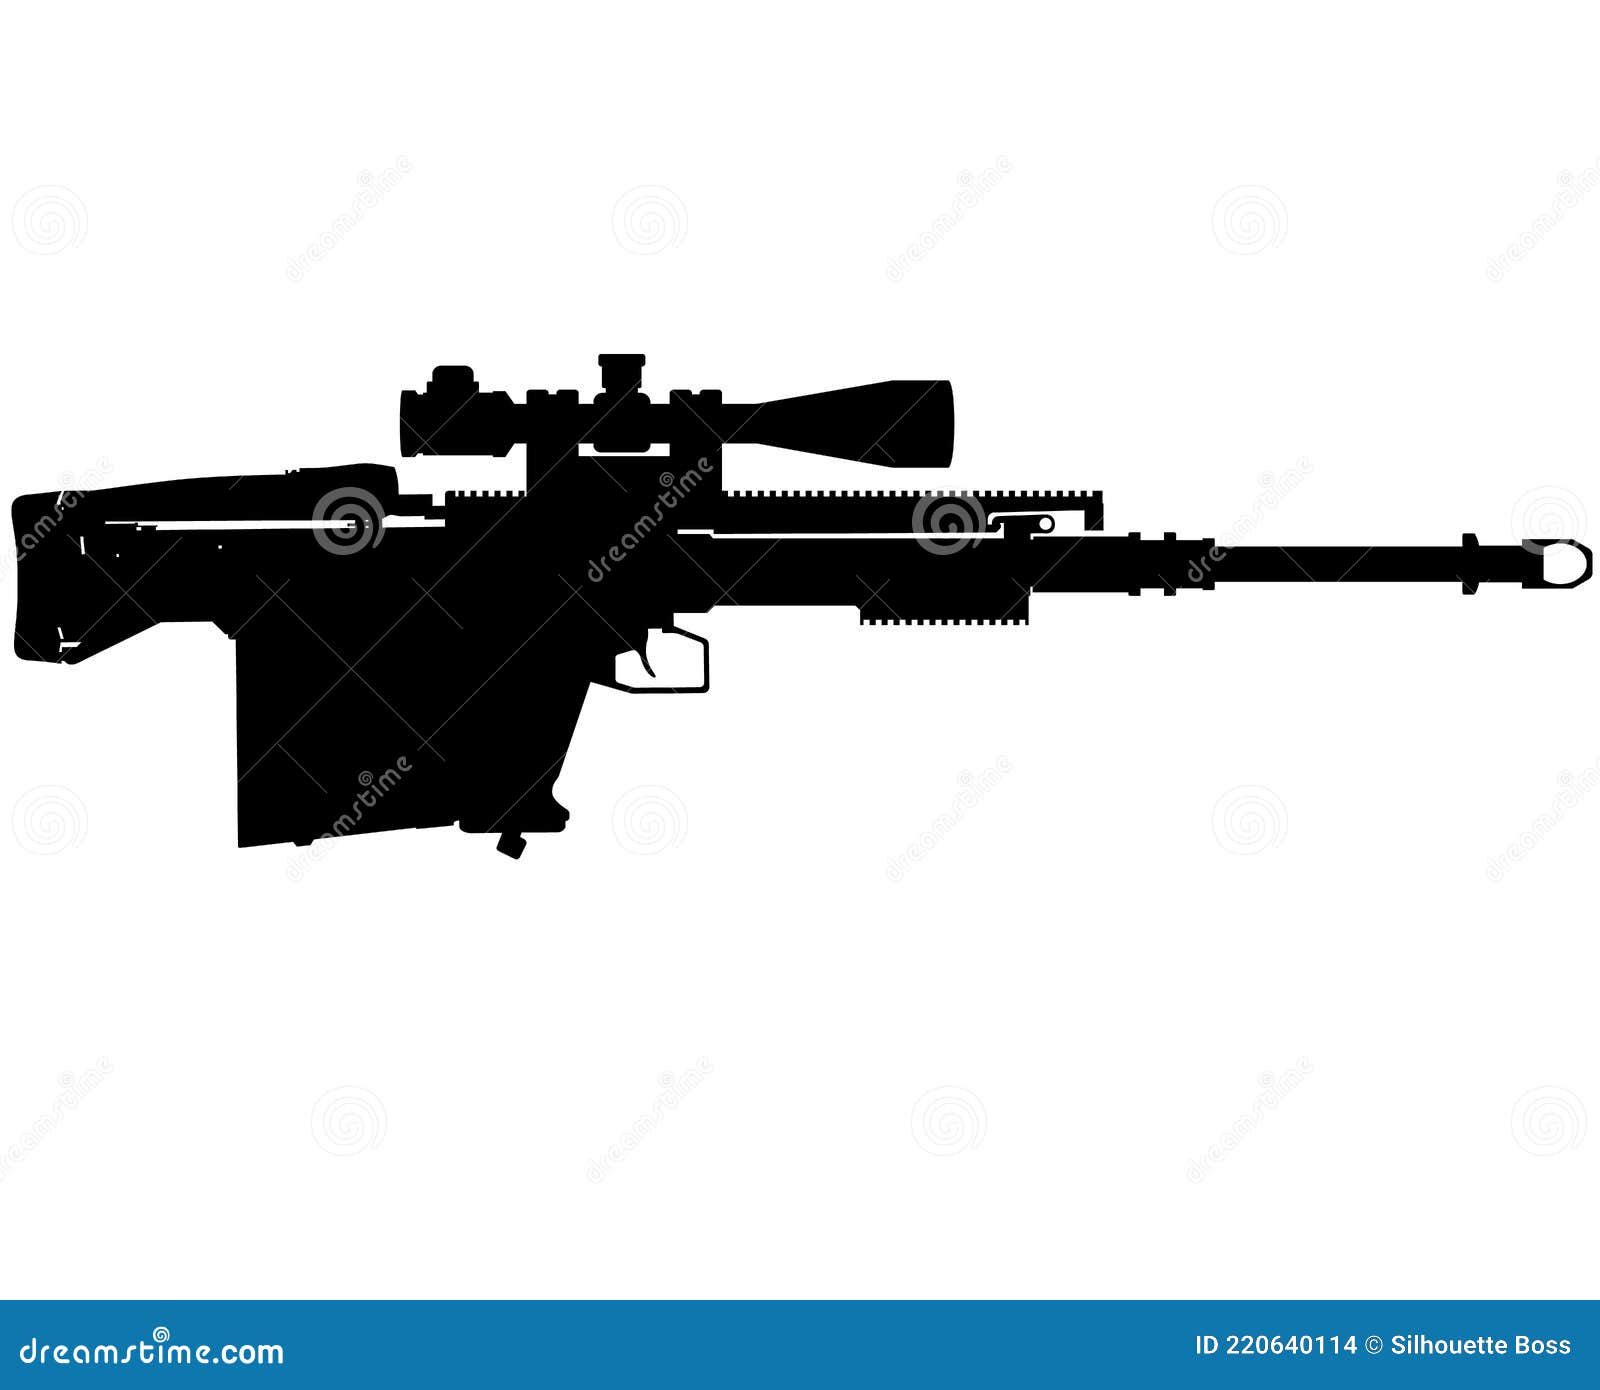 gepard gepÃÂ¡rd anti materiel rifle, gm6 lynx caliber 50 bmg cal 12 Ãâ 99 nato bulpup semi auto army special forces sniper rifle